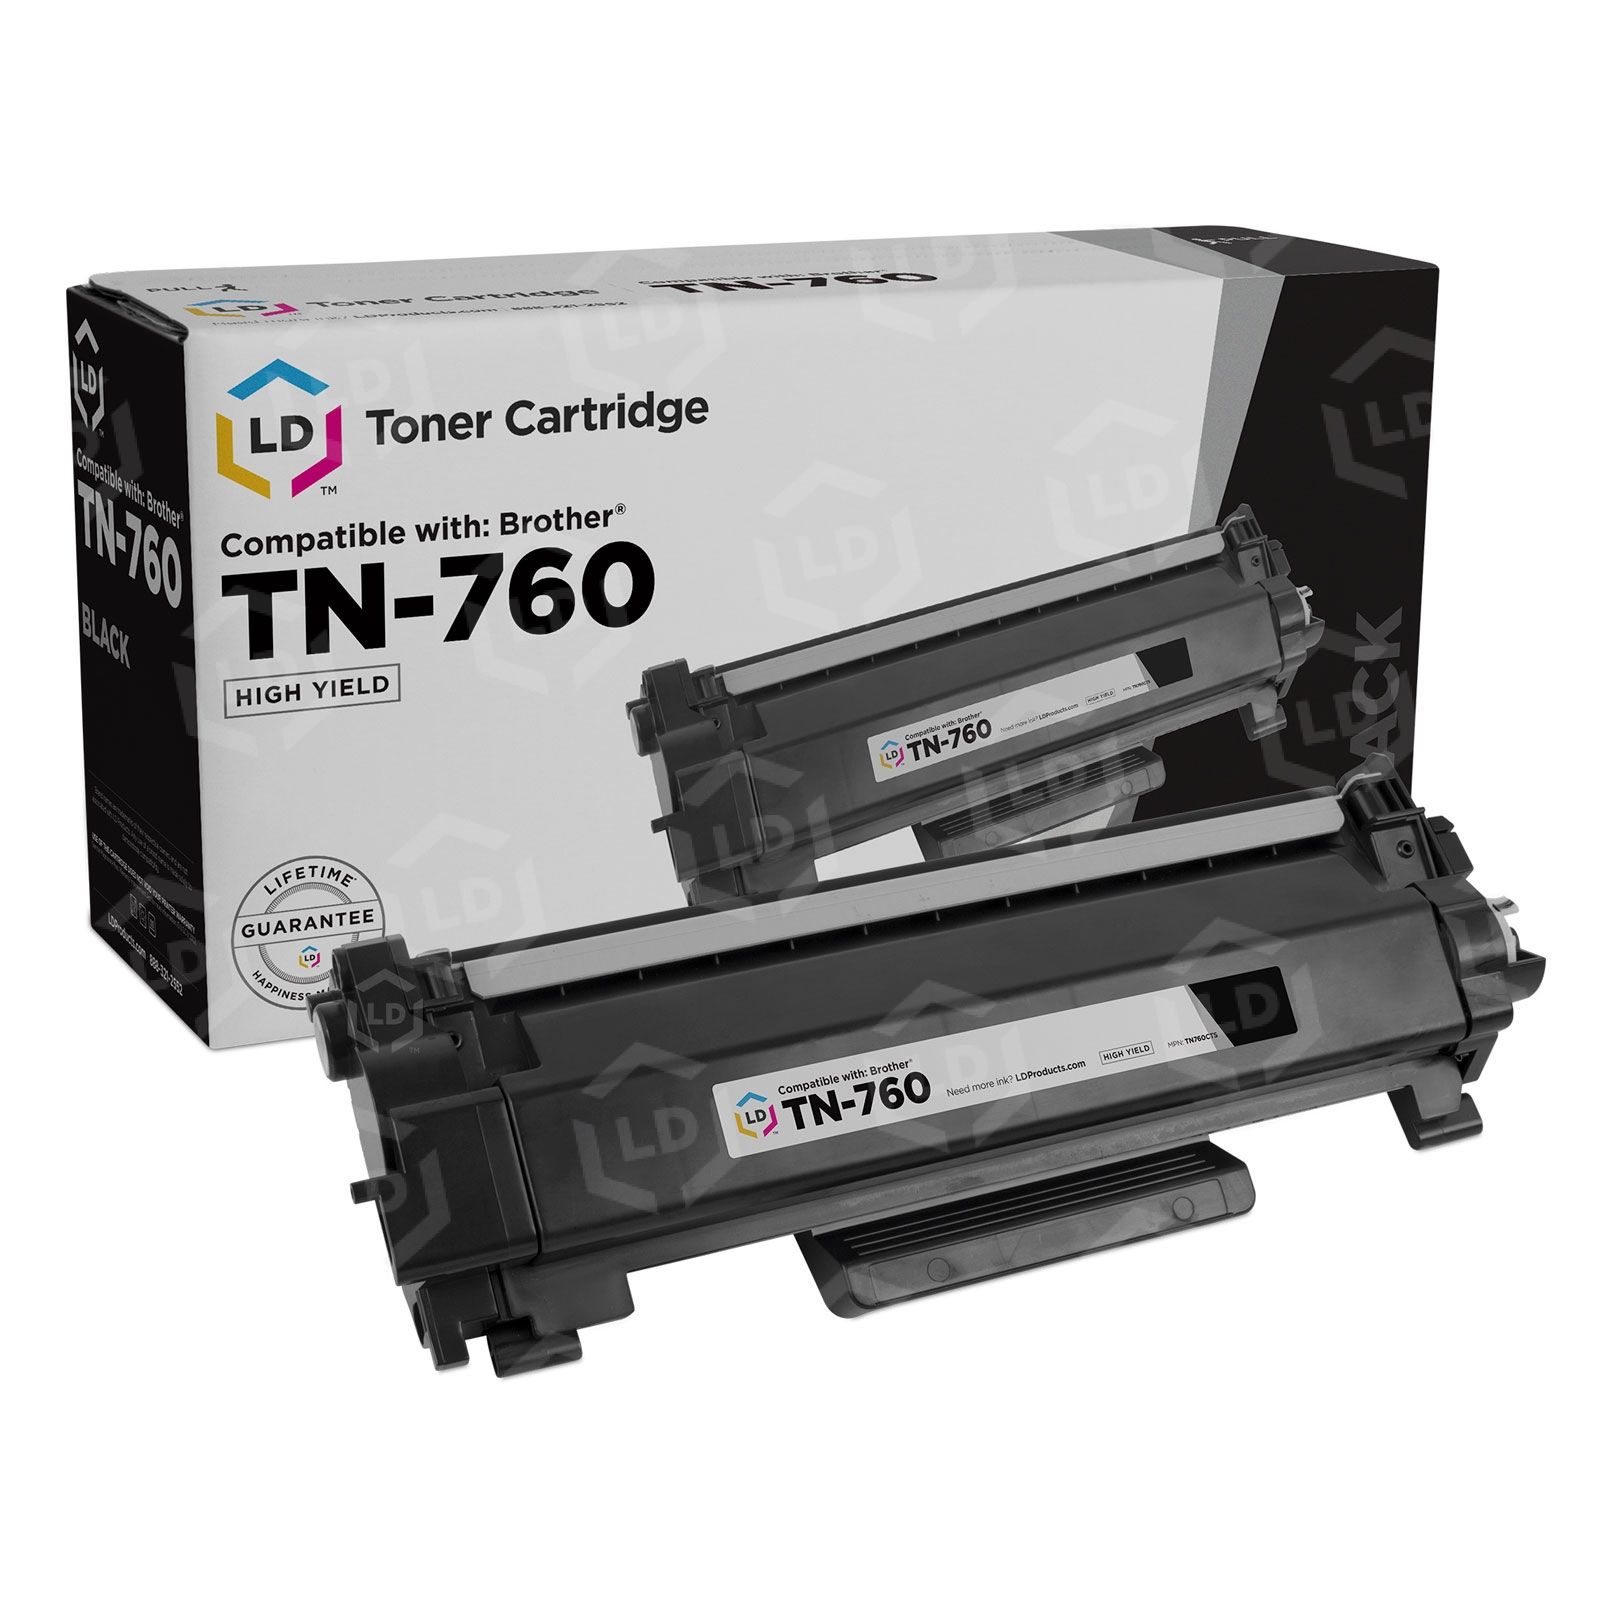 TN760 High Yield Toner Cartridge TN-760 Replacement for Brother TN-760  TN760 HL-L2350DW HL-L2395DW HL-L2390DW HL-L2370DW MFC-L2750DW MFC-L2710DW